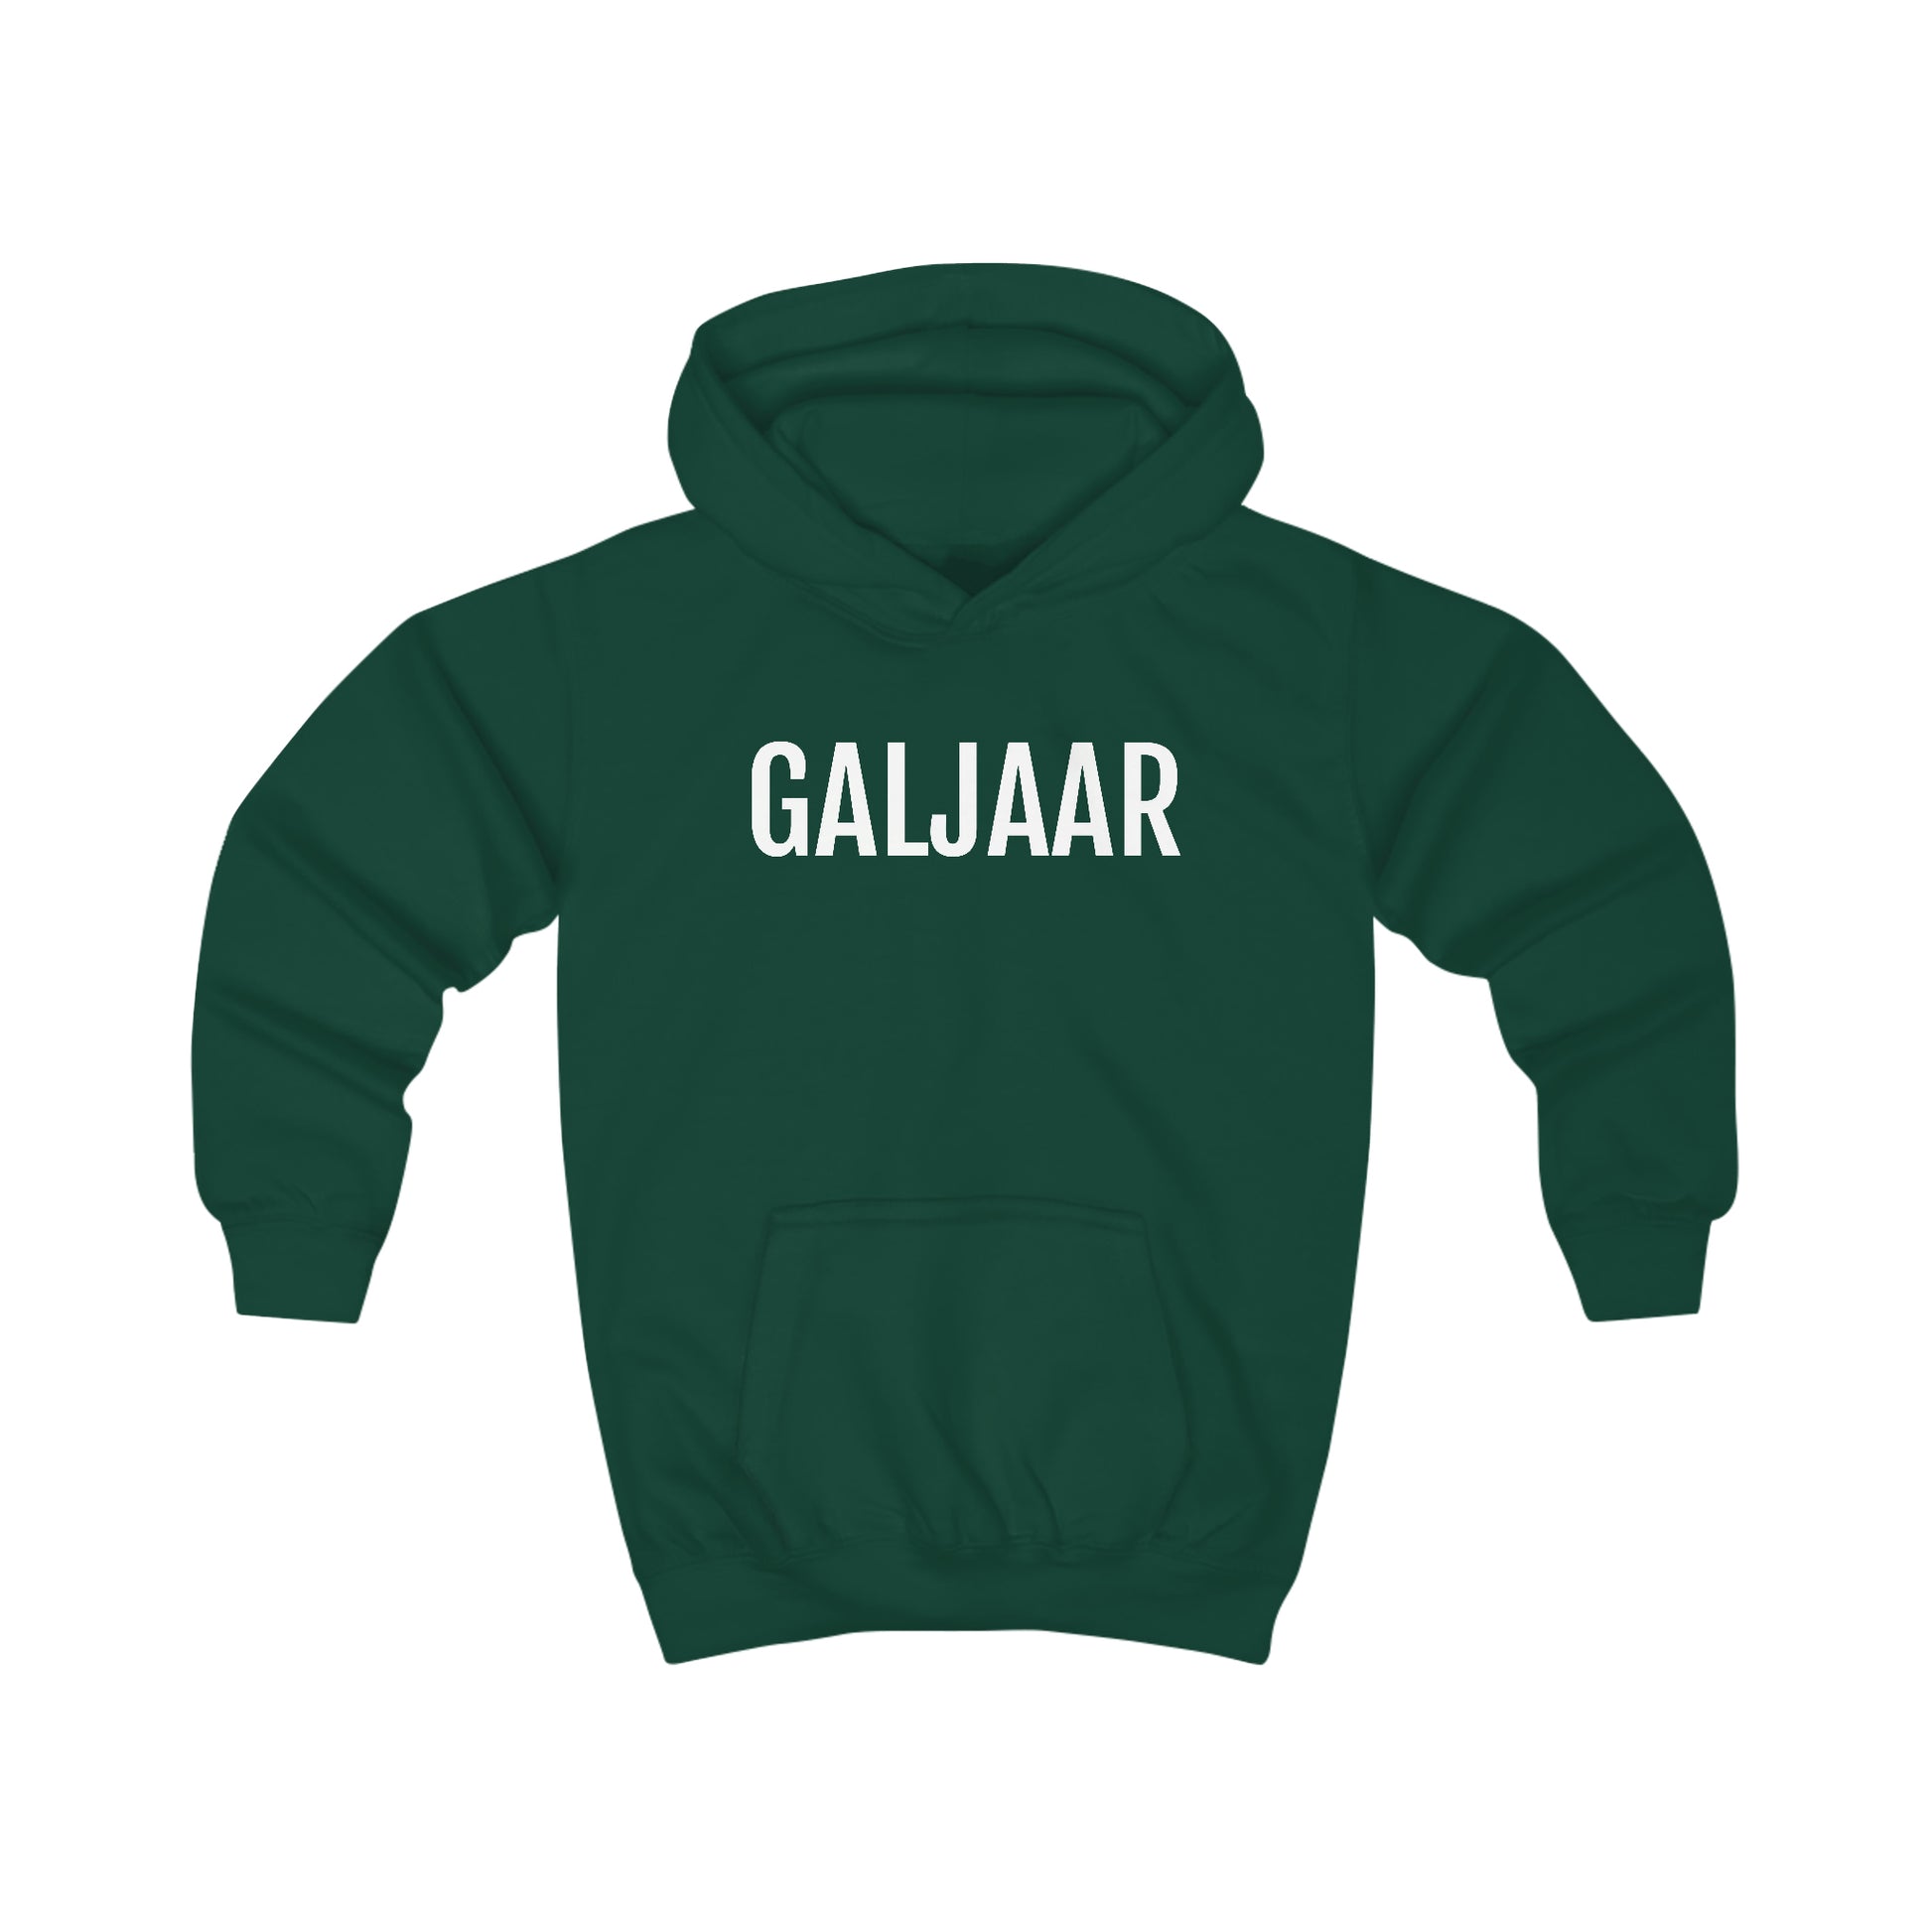 Galjaar | Unisex hoodie uit Oost-Vlaanderen voor kinderen - Groen